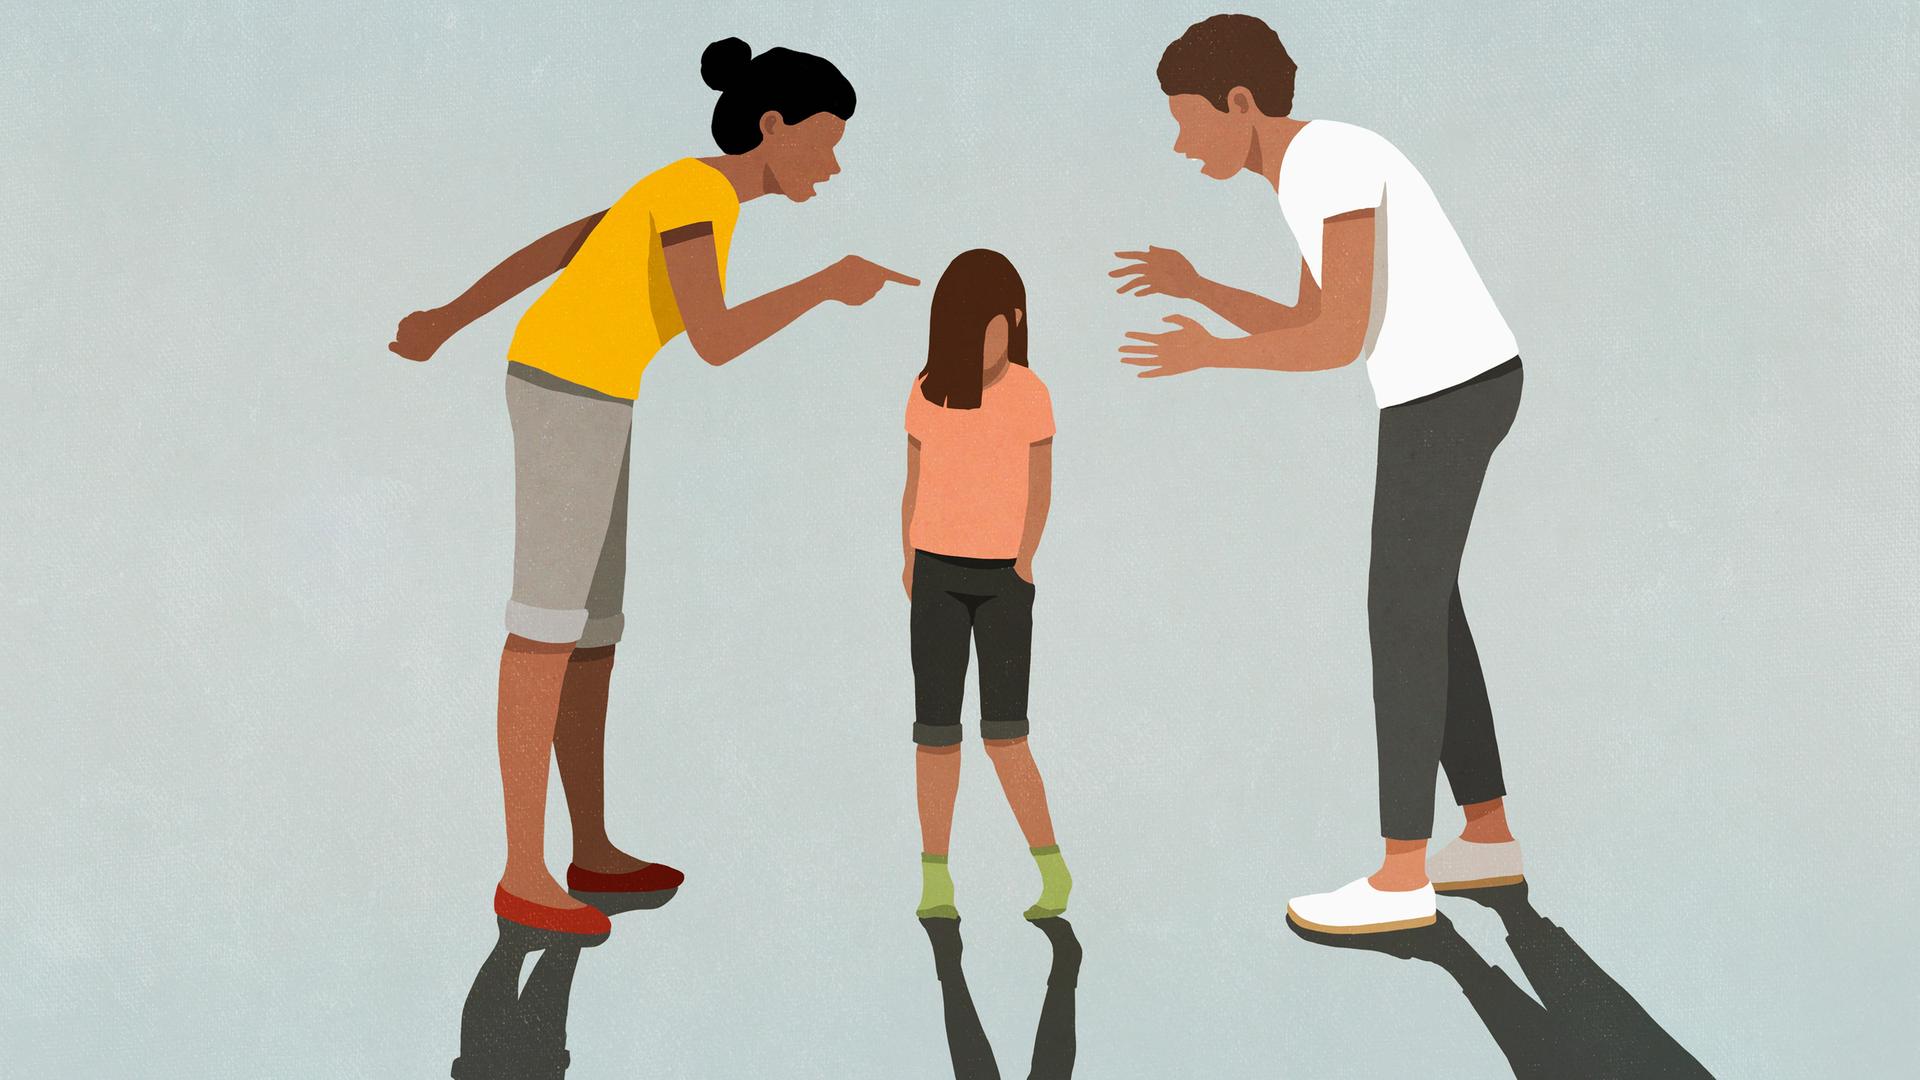 Illustration: Ein Kind steht mit gesenktem Kopf zwischen zwei Erwachsenen. Eine Person zeigt den erhobenen Zeigefinger. Die andere gestikuliert. Beide reden auf das Kind ein.